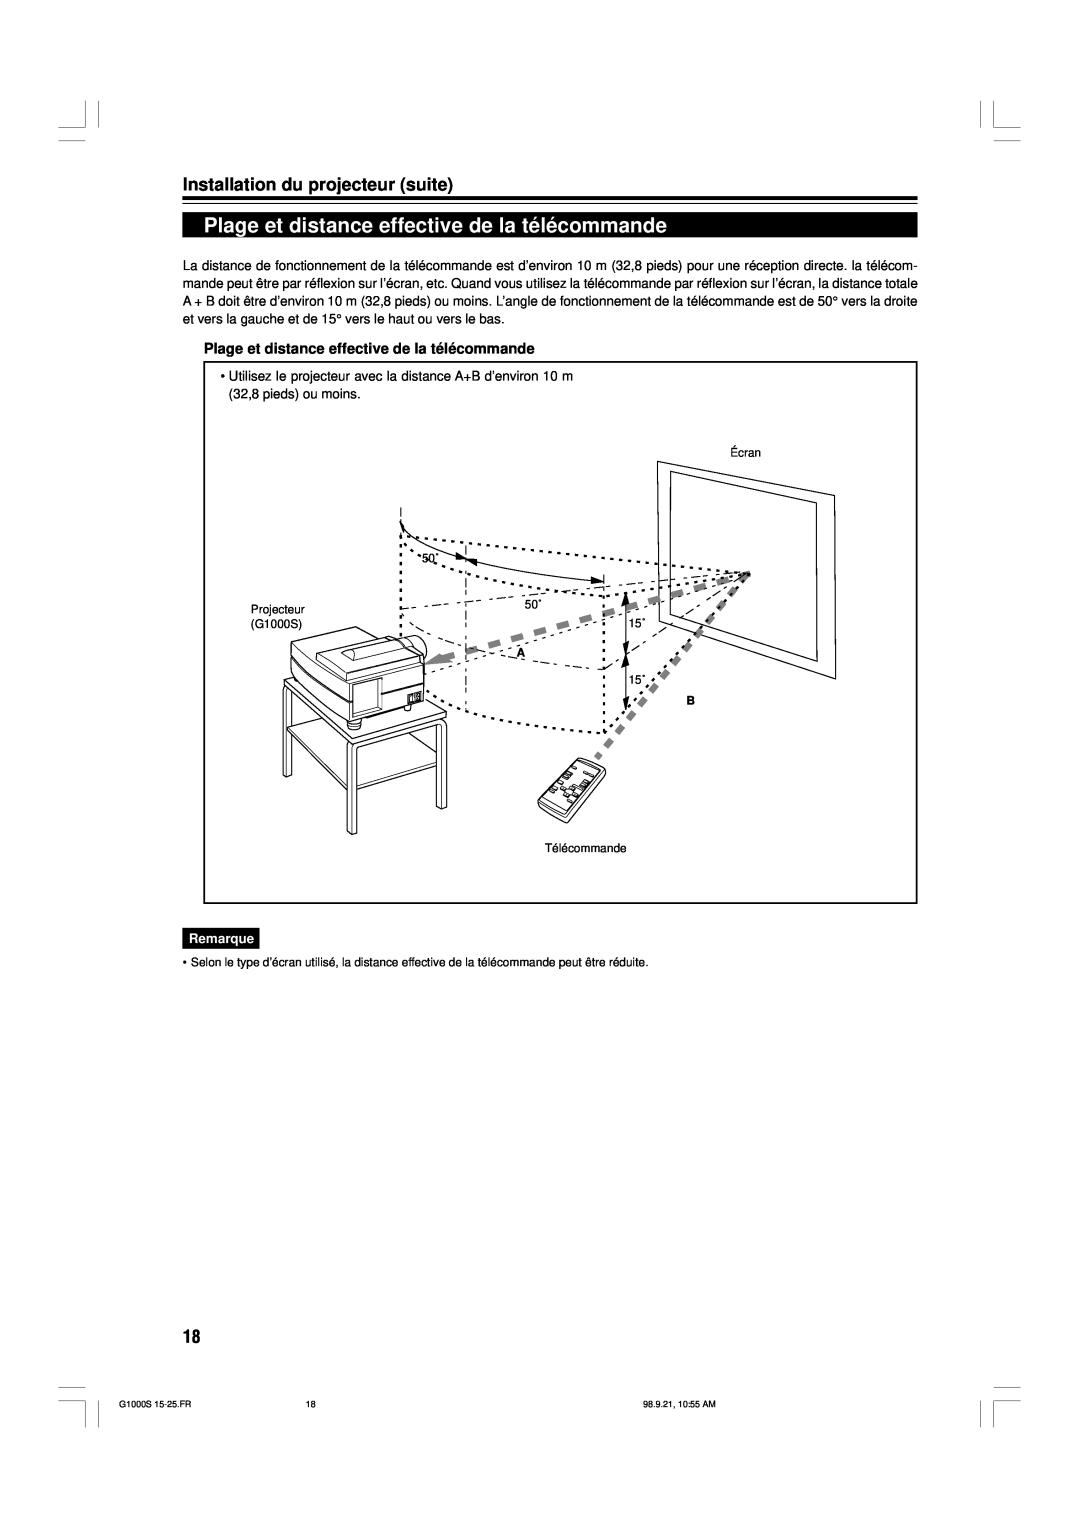 JVC G1000S manual Plage et distance effective de la télécommande, Installation du projecteur suite, Remarque 